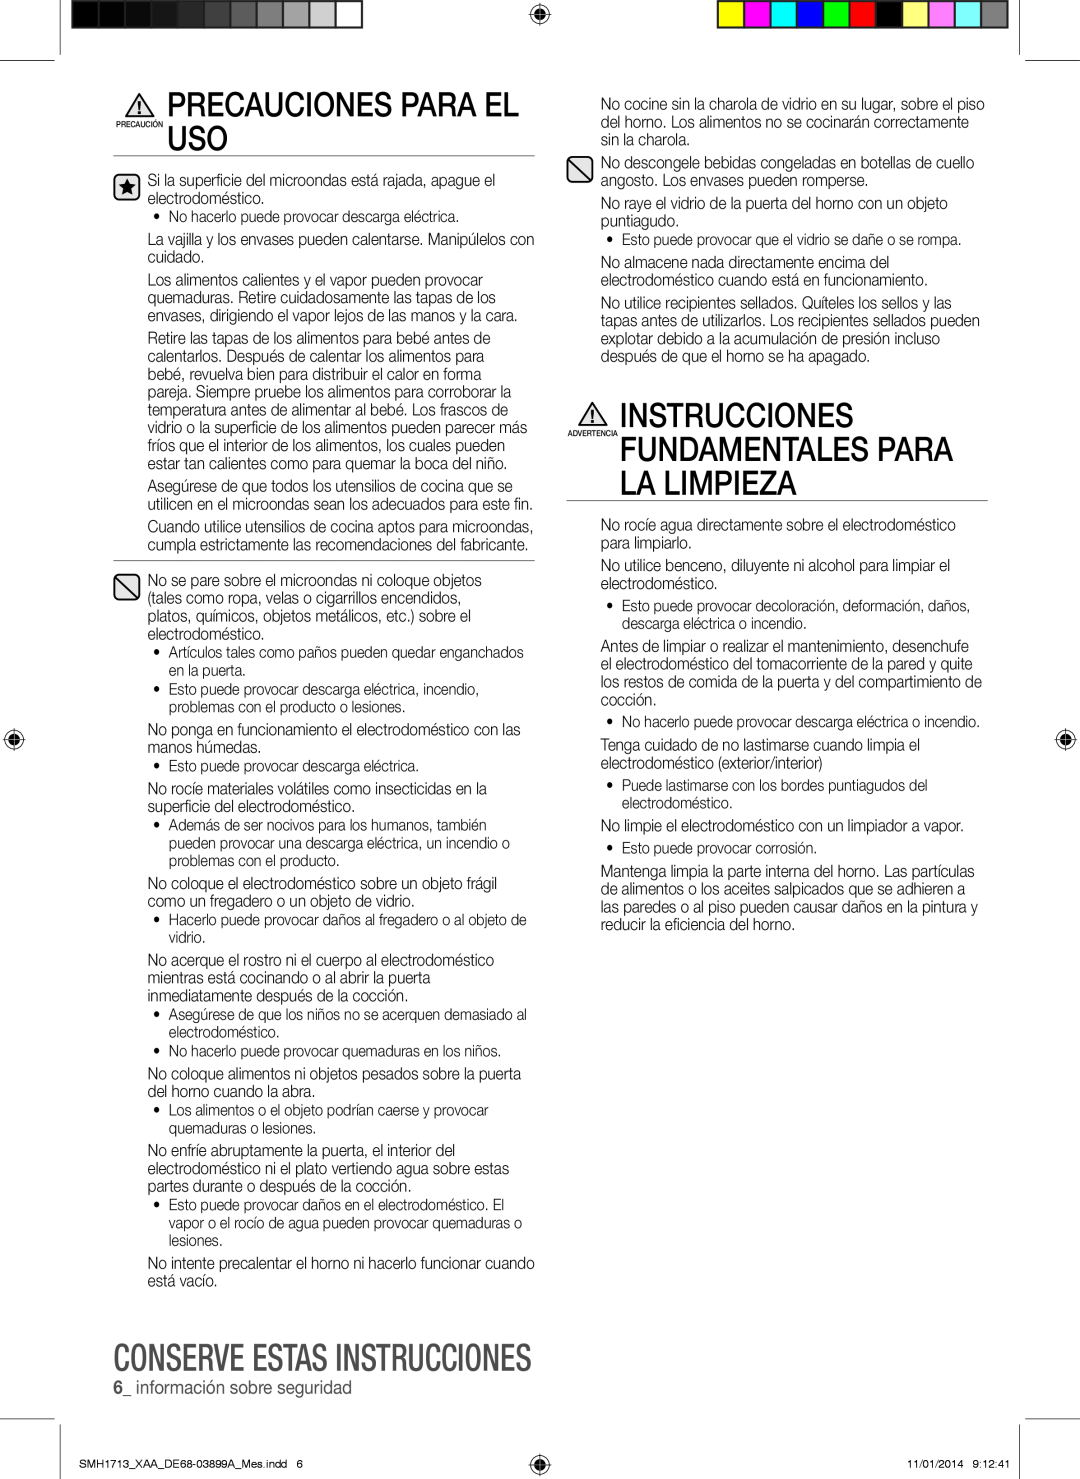 Samsung SMH1713 user manual Instrucciones Advertencia Fundamentales Para La Limpieza, Precauciones Para El 